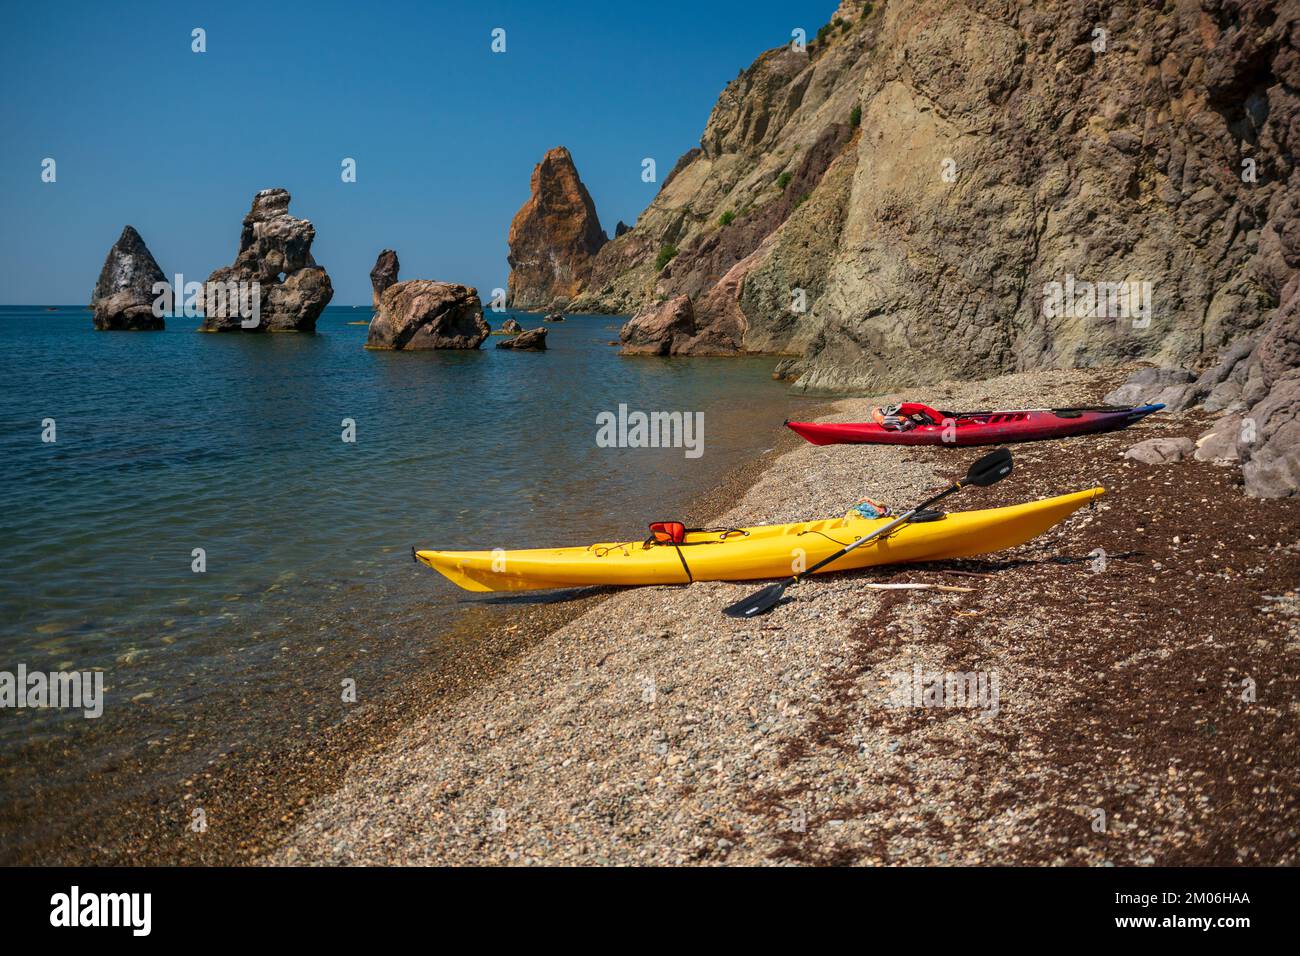 Deux kayaks jaune et rouge sur la rive d'une petite plage sauvage de galets sur le fond de rochers dans la mer, Fiolent, Crimée Banque D'Images